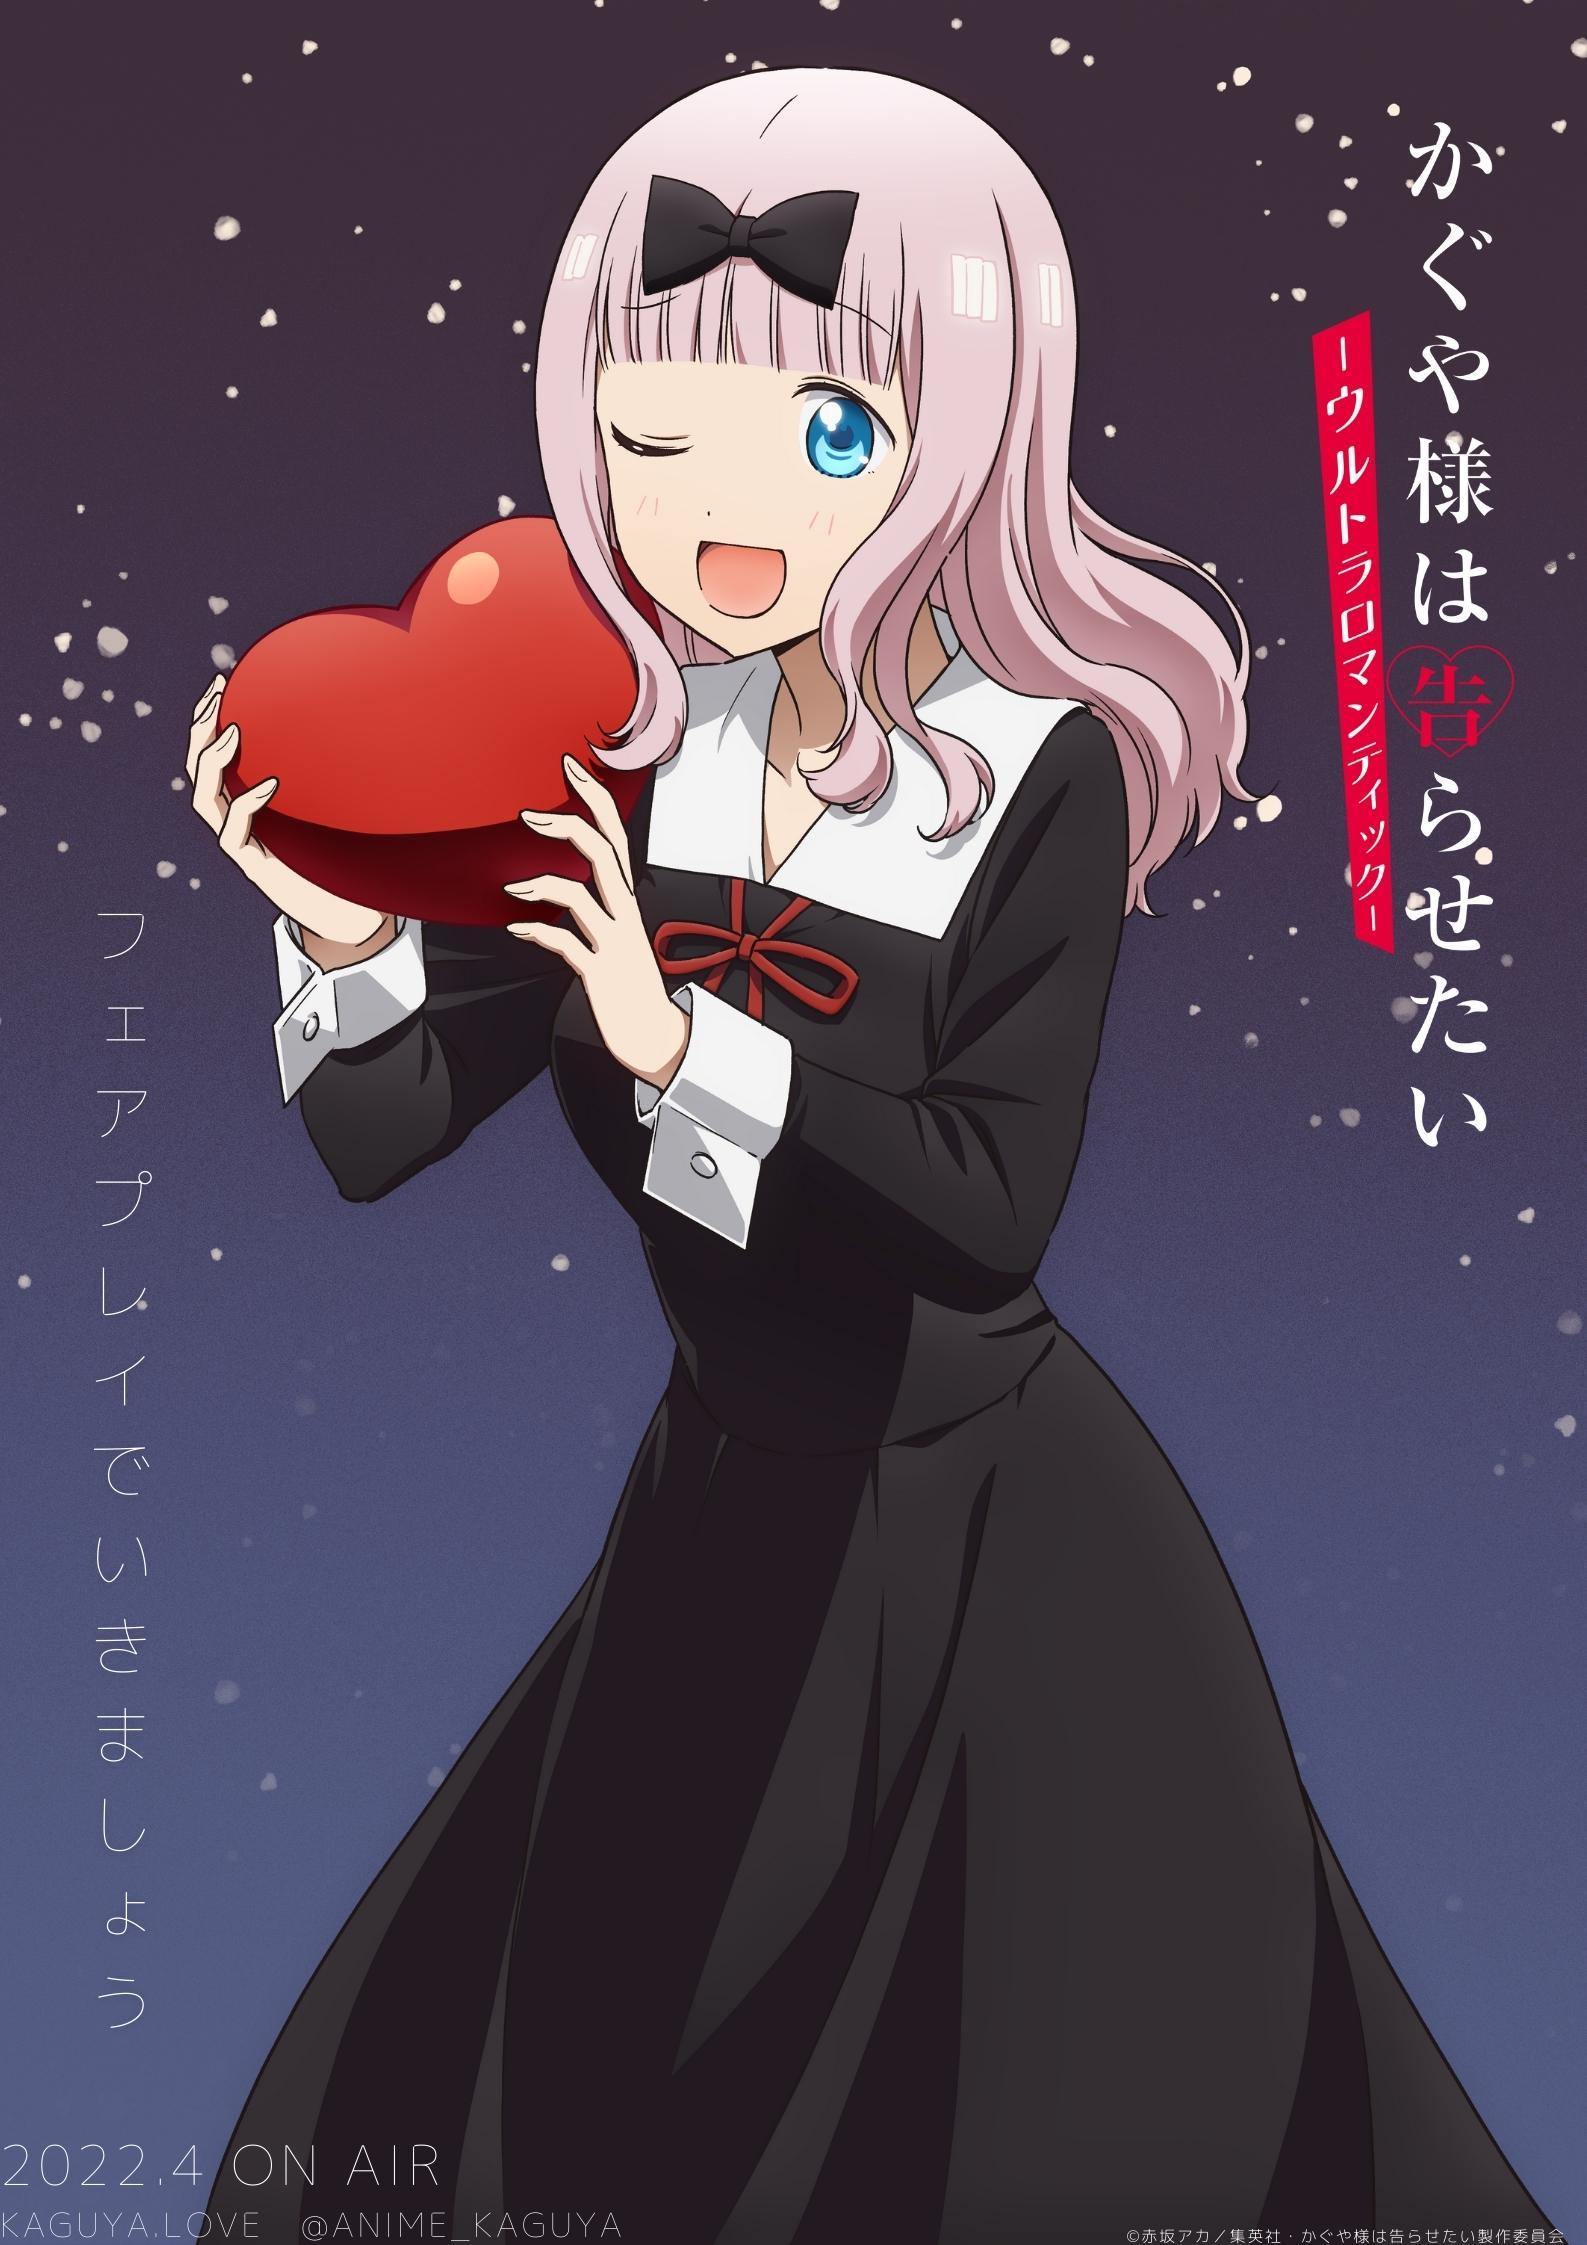 El tráiler de la tercera temporada de Kaguya-sama: Love is War Anime  muestra los temas de apertura y finalización - NinoAsia